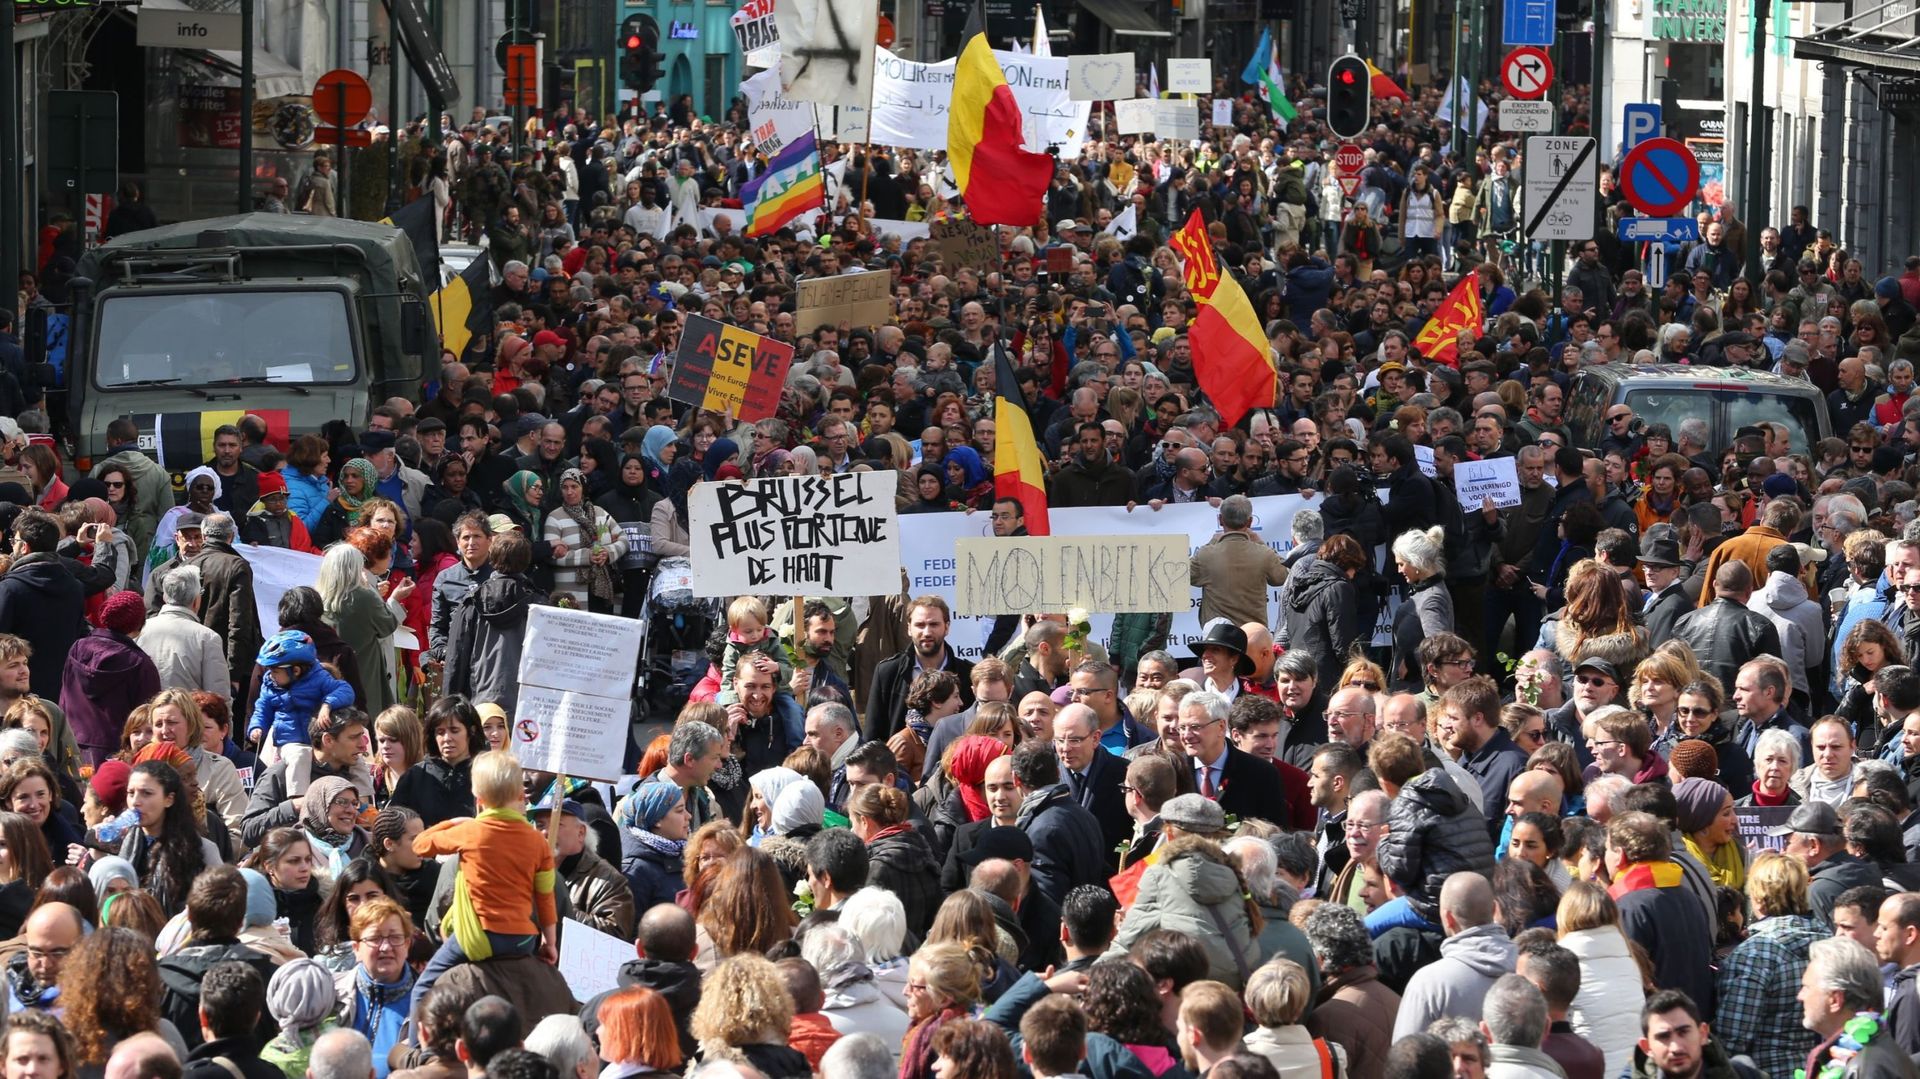 Marche contre la peur à Bruxelles: 7000 personnes selon la police